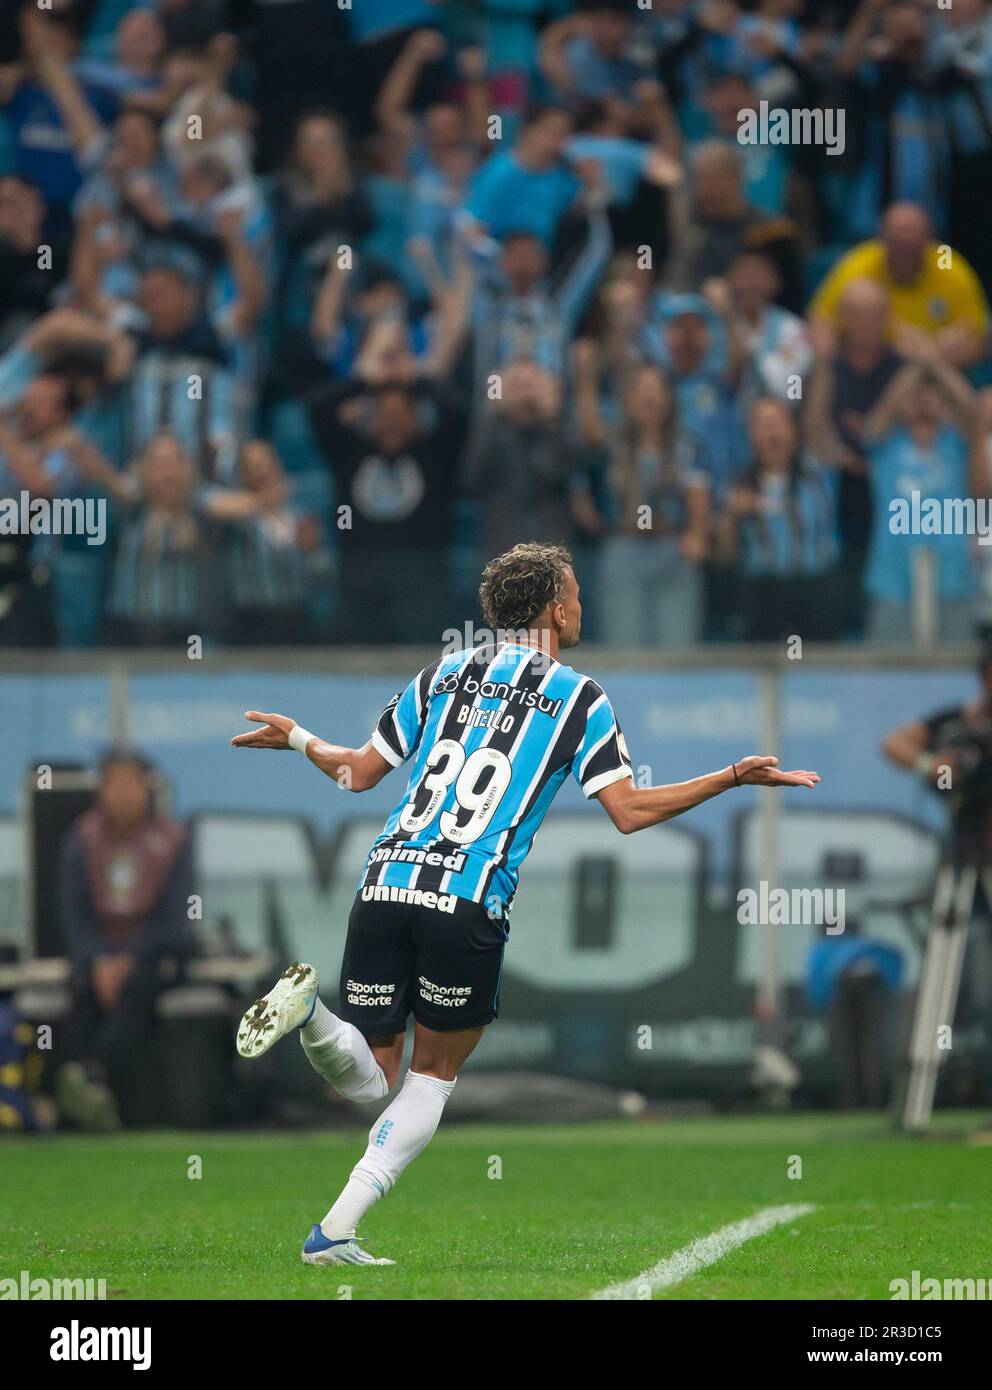 Esportes da Sorte é o novo patrocinador do Grêmio - MKT Esportivo